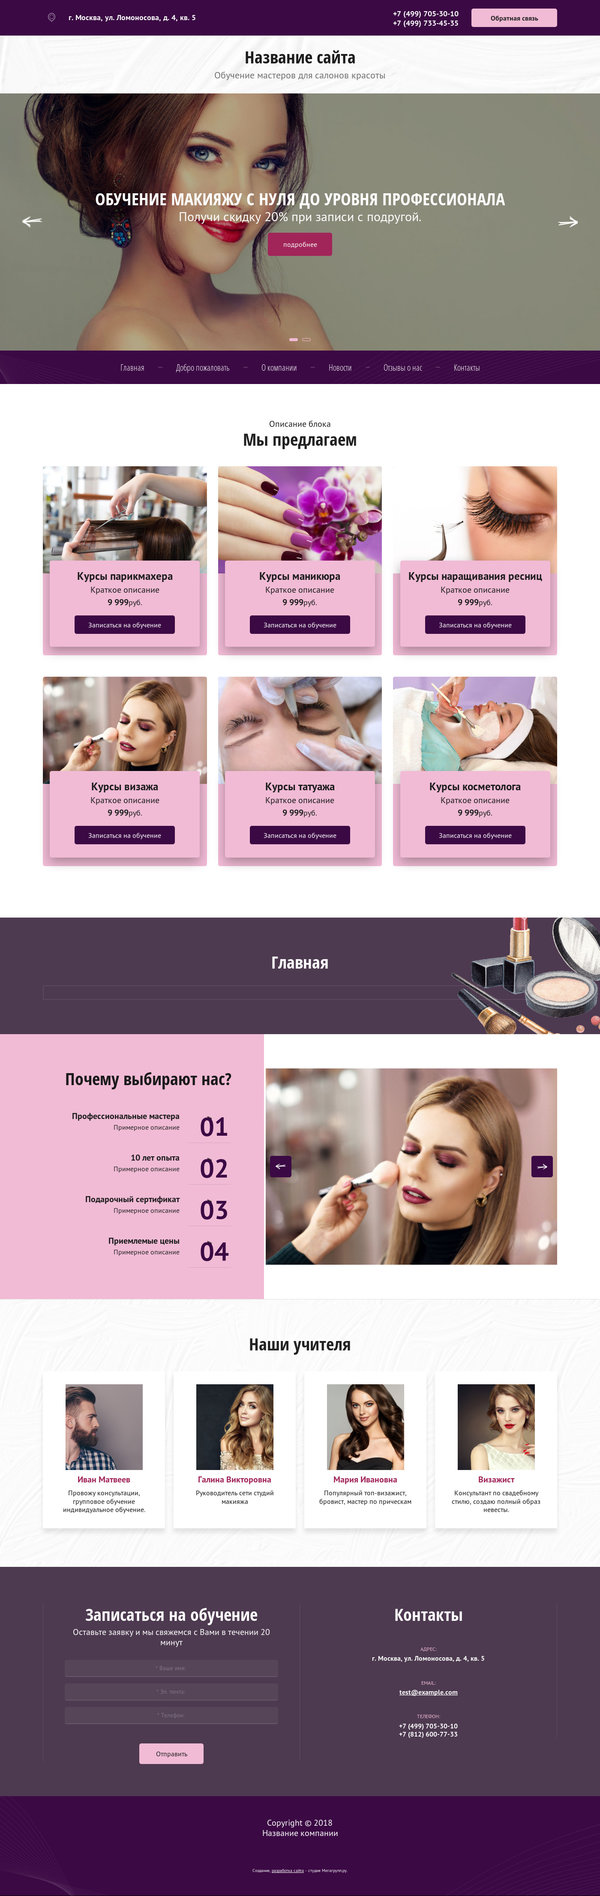 Готовый Сайт-Бизнес № 2004128 - Обучение мастеров для салонов красоты (Десктопная версия)